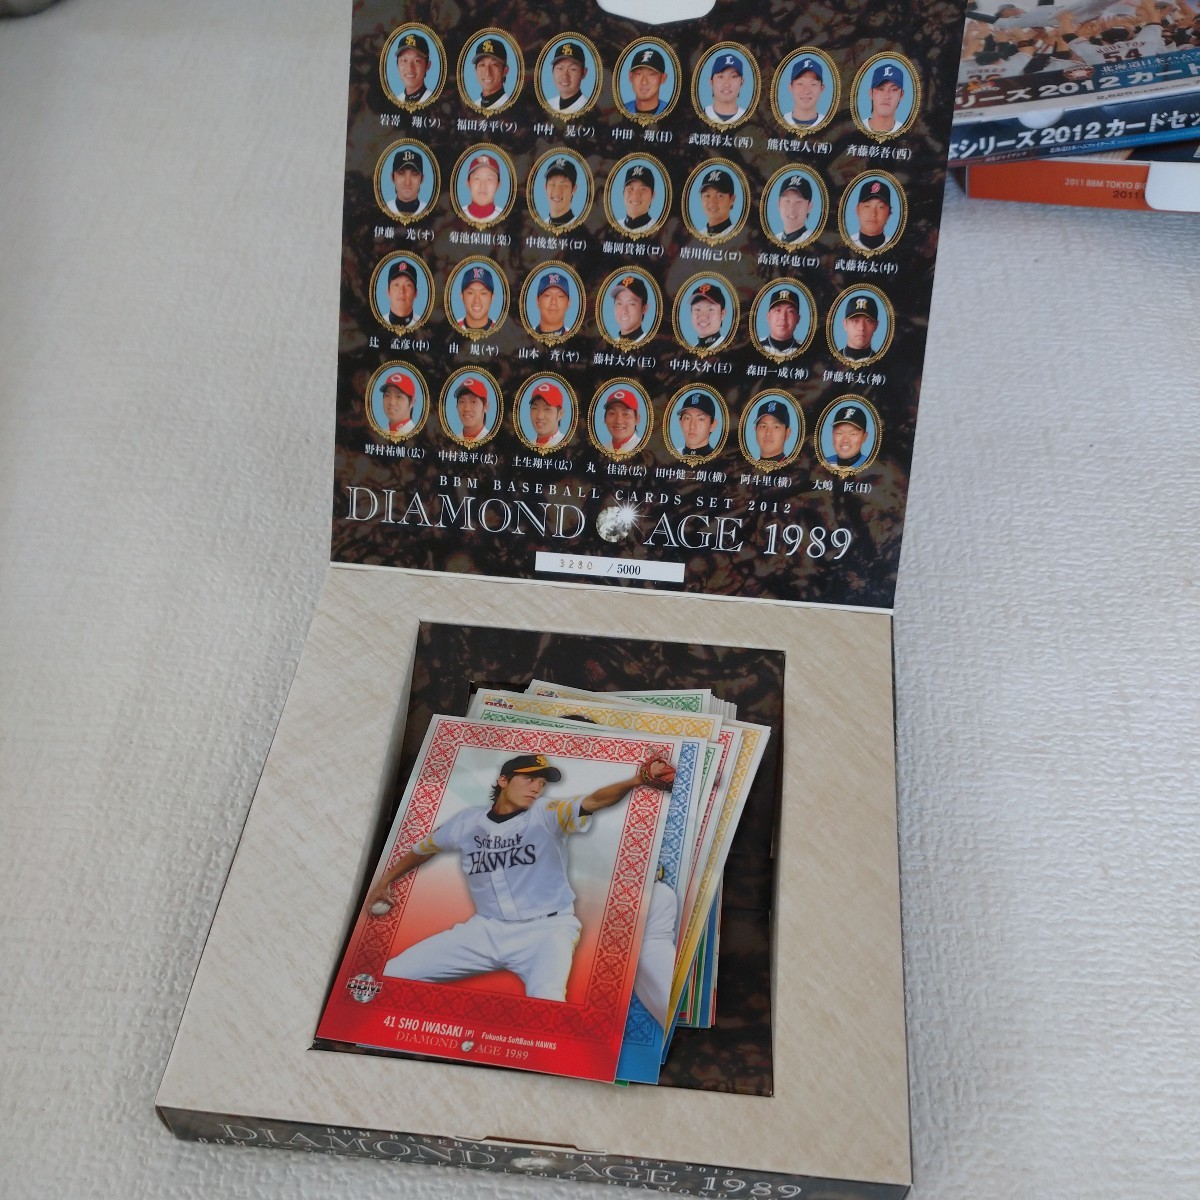 a11 野球カード ベースボールカード ダイアモンドエイジ 1989 2012 東京6大学野球カードセット コナミ日本シリーズ2012カードセット _画像6